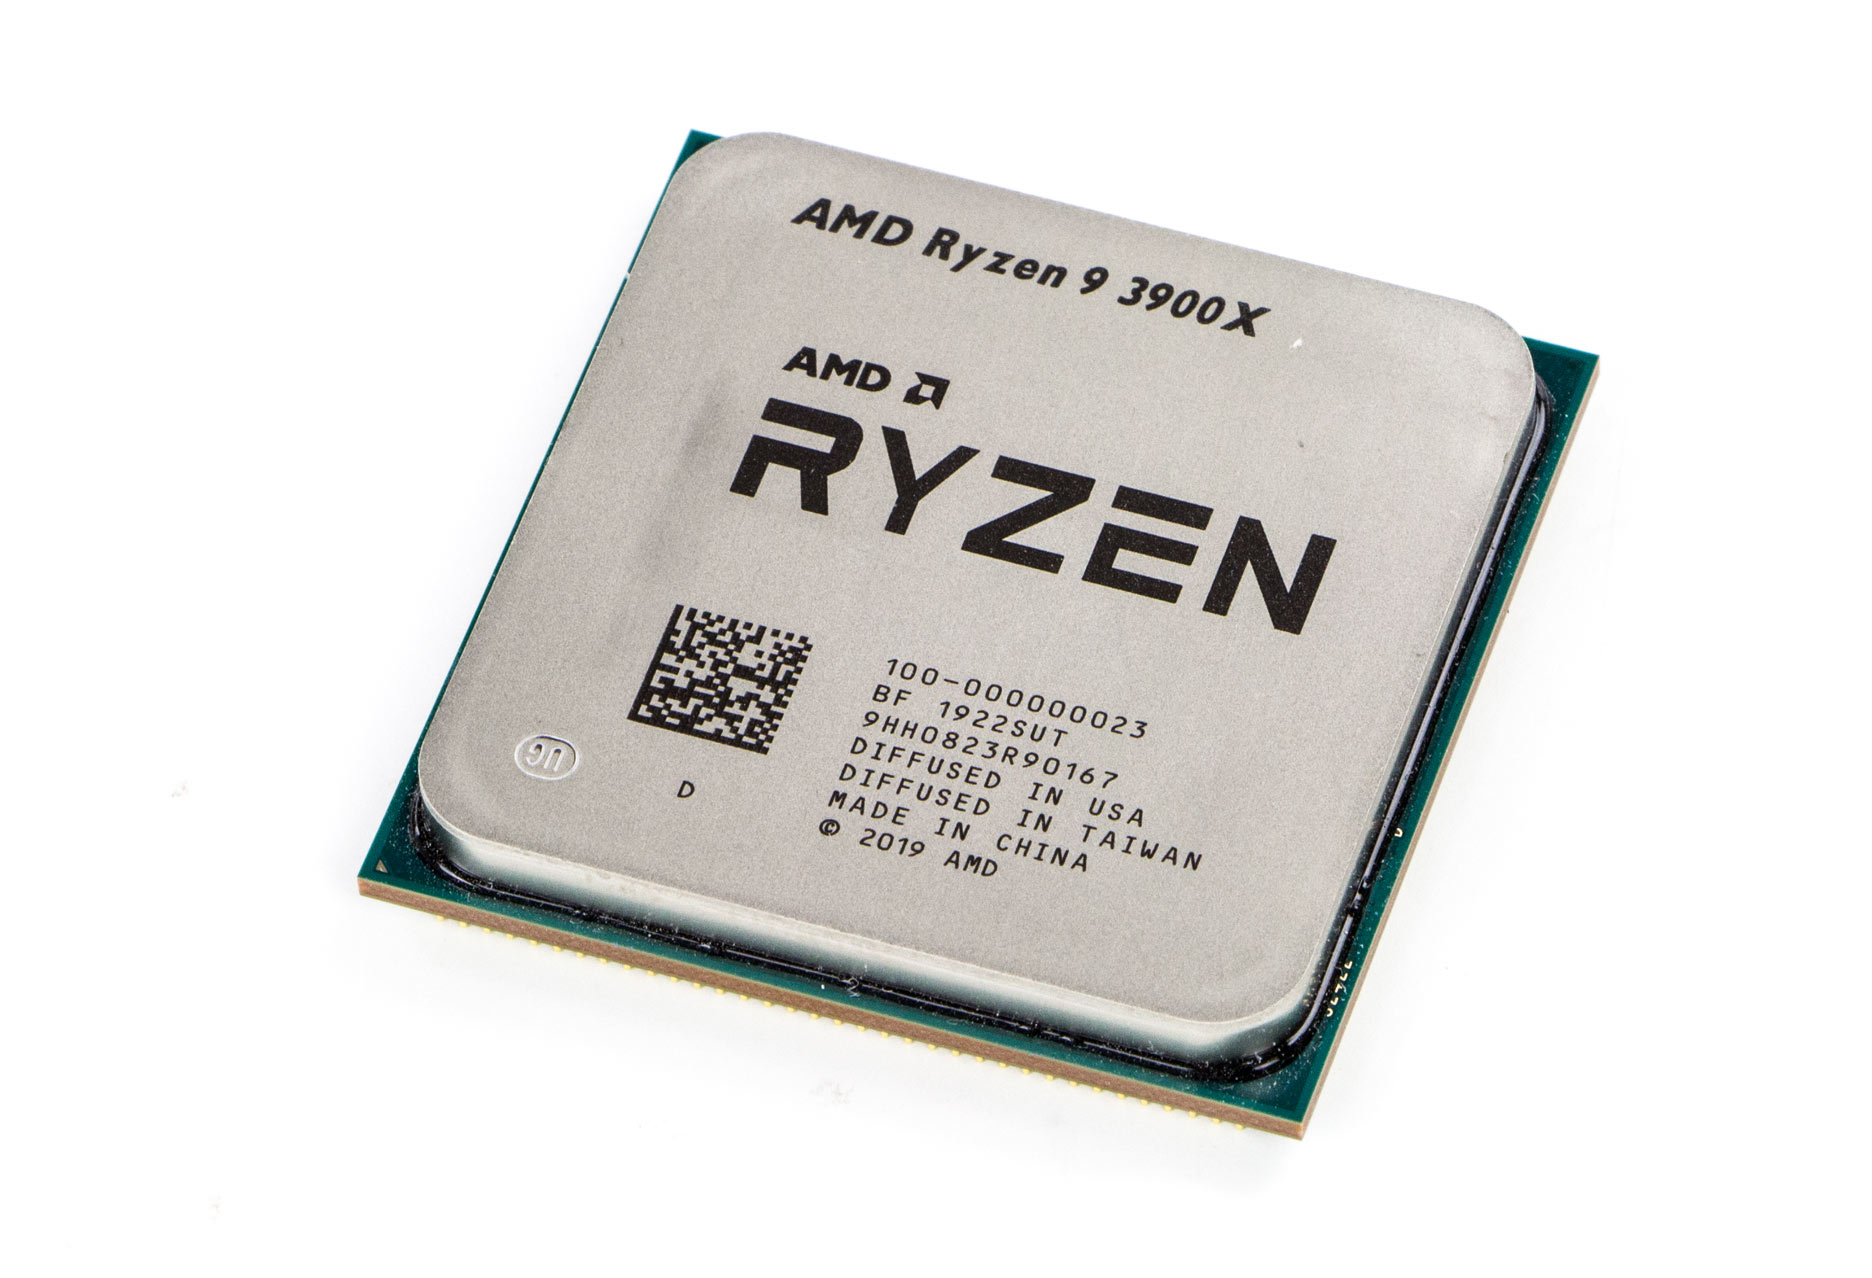 Купить процессор ryzen 9. Процессор AMD Ryzen 9. Процессор AMD Ryzen 9 3900x. Процессор AMD Ryzen 9 5900x OEM. Процессор: AMD Ryzen 9 3900 4.3 GHZ\.